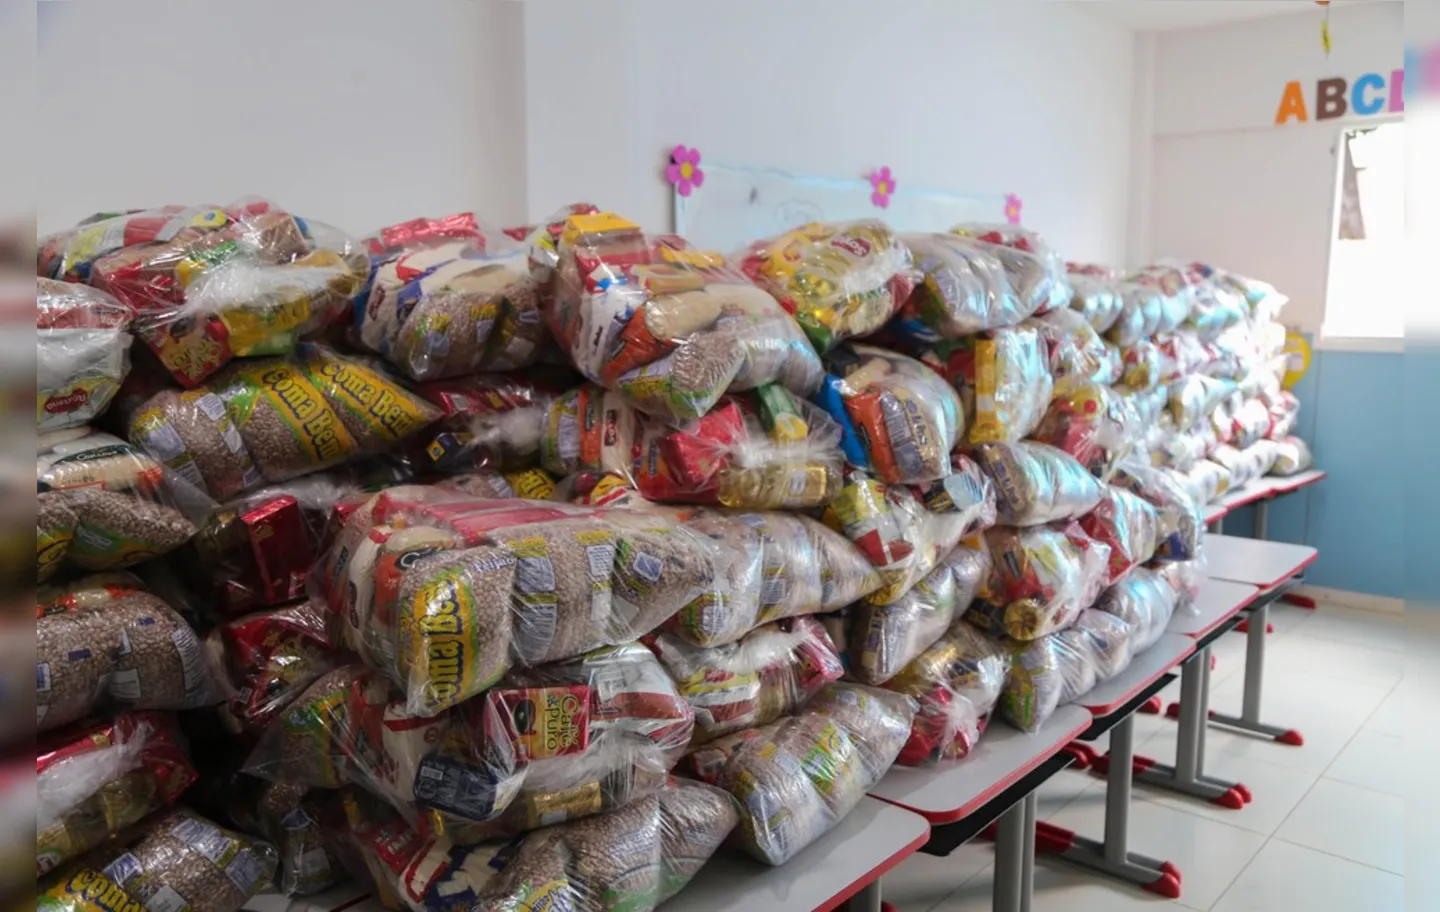 Segundo a Smed, são cerca de 163 mil cestas entregues em cada mês | Foto: Bruno Concha | Secom PMS